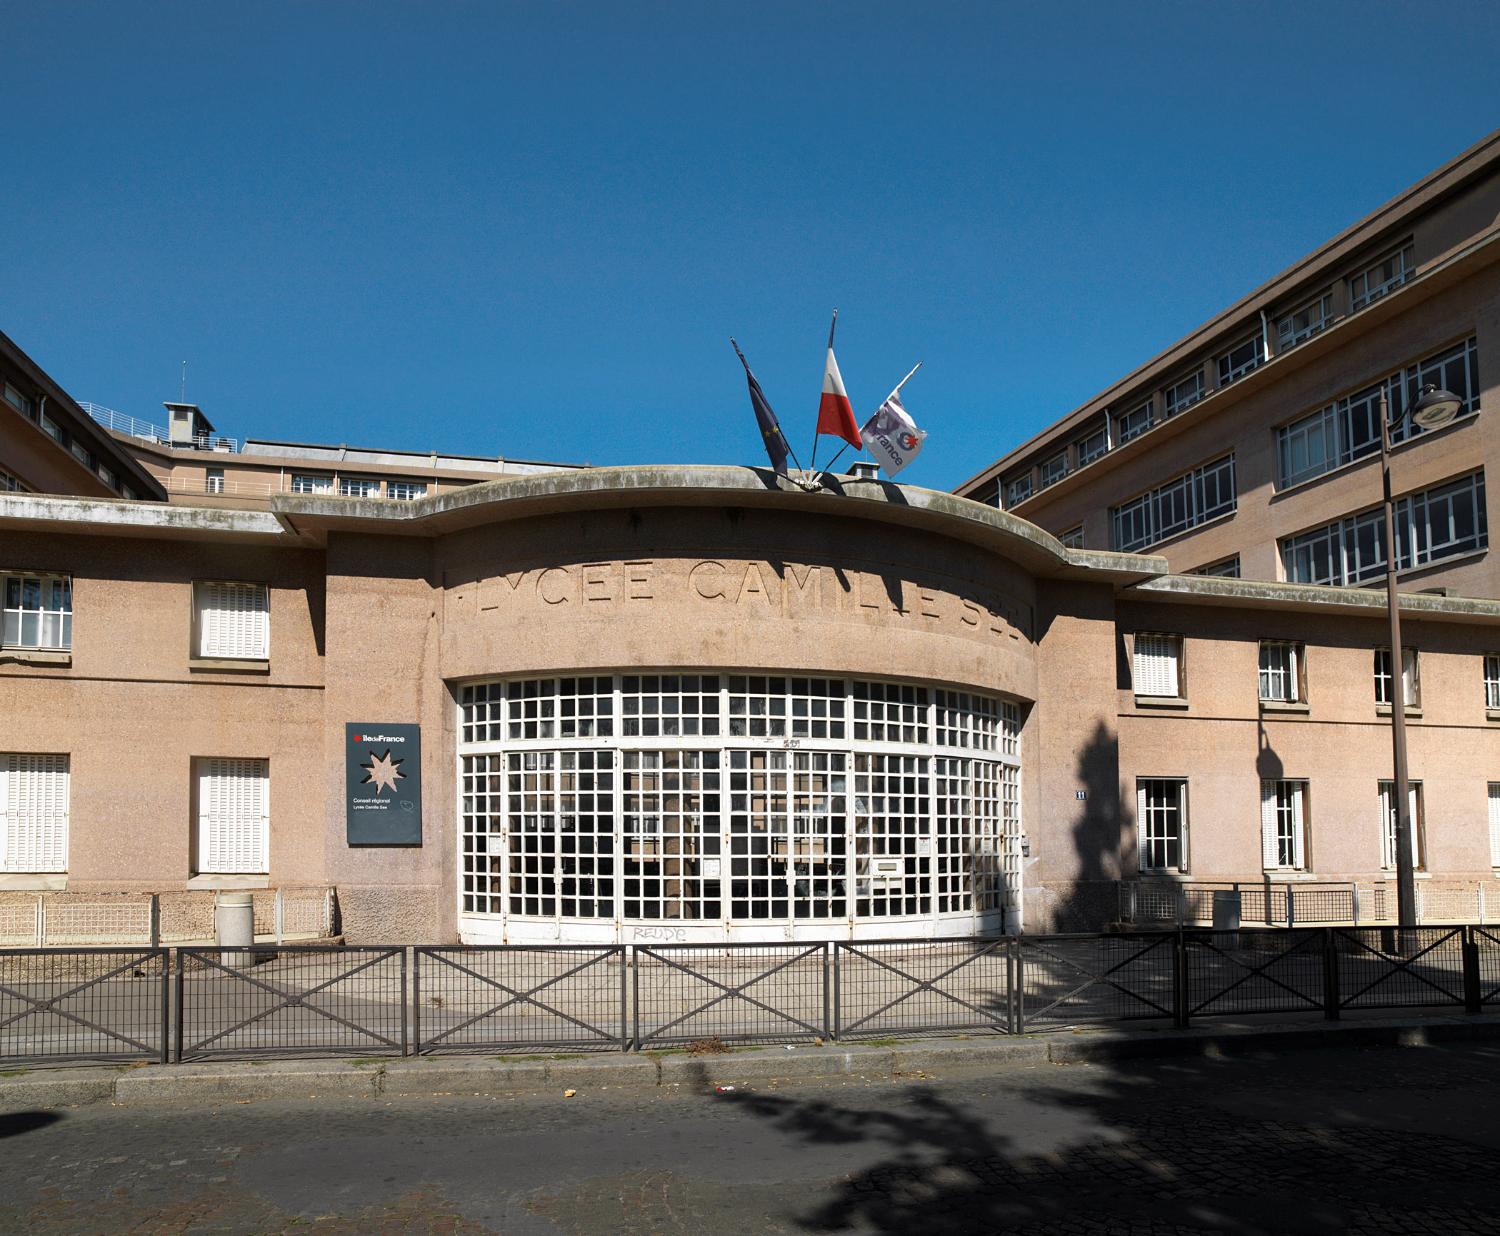 Lycée Camille-Sée